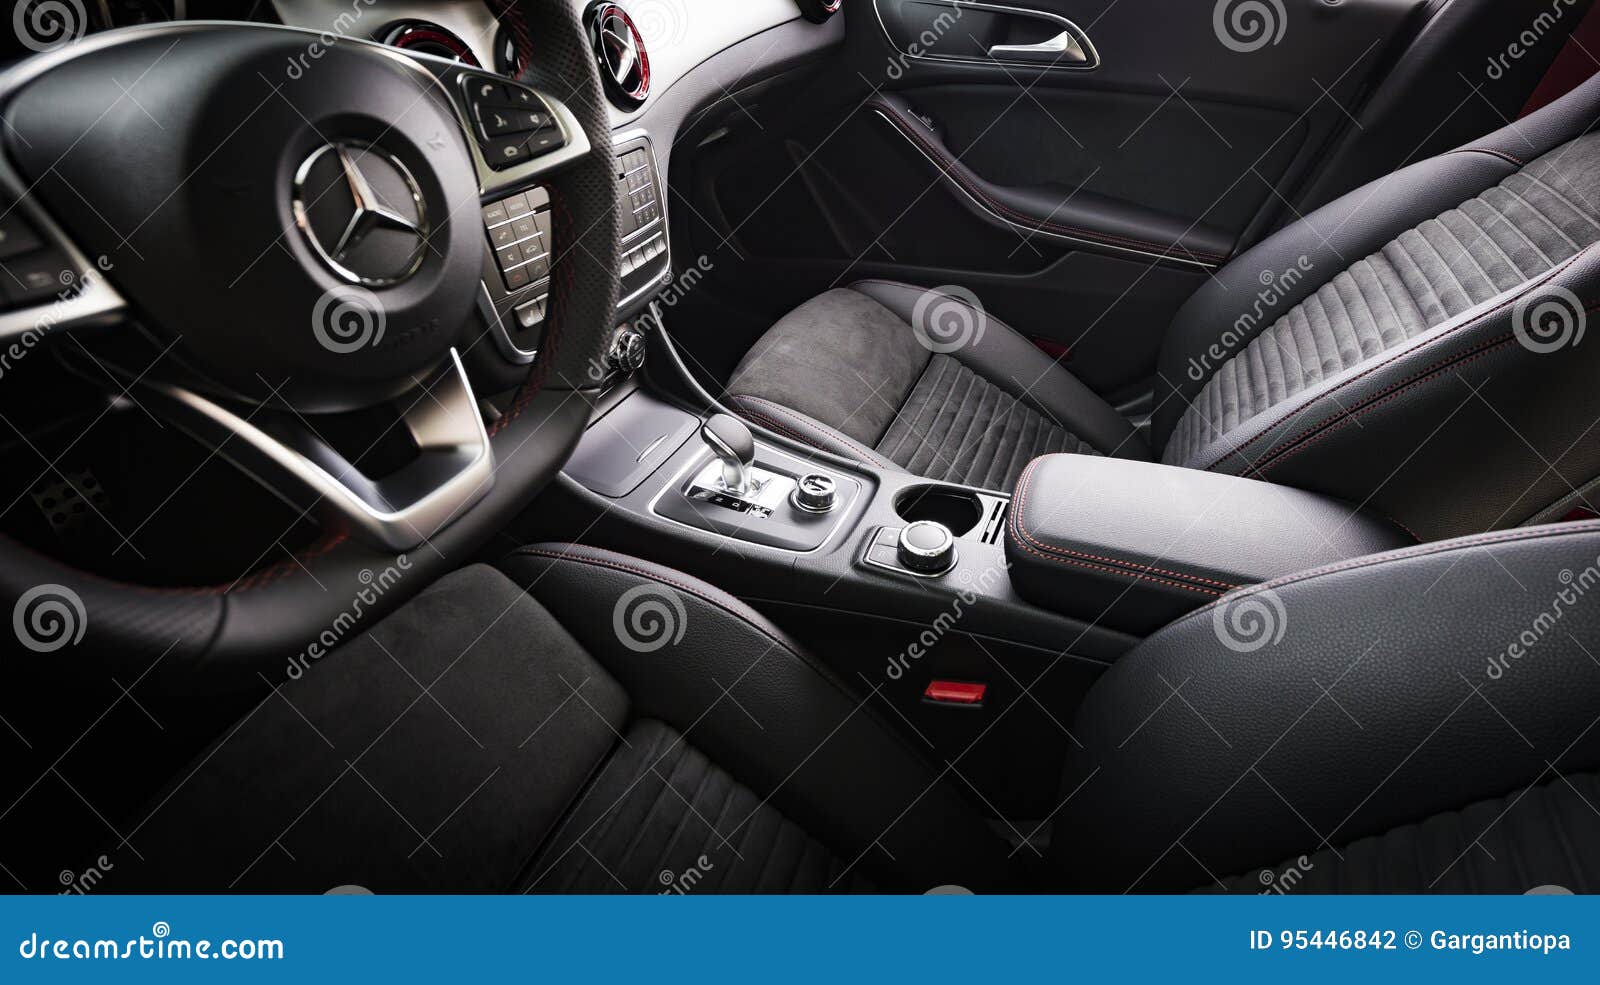 Mercedes Benz Cla 45 2016 Amg Innenraum Redaktionelles